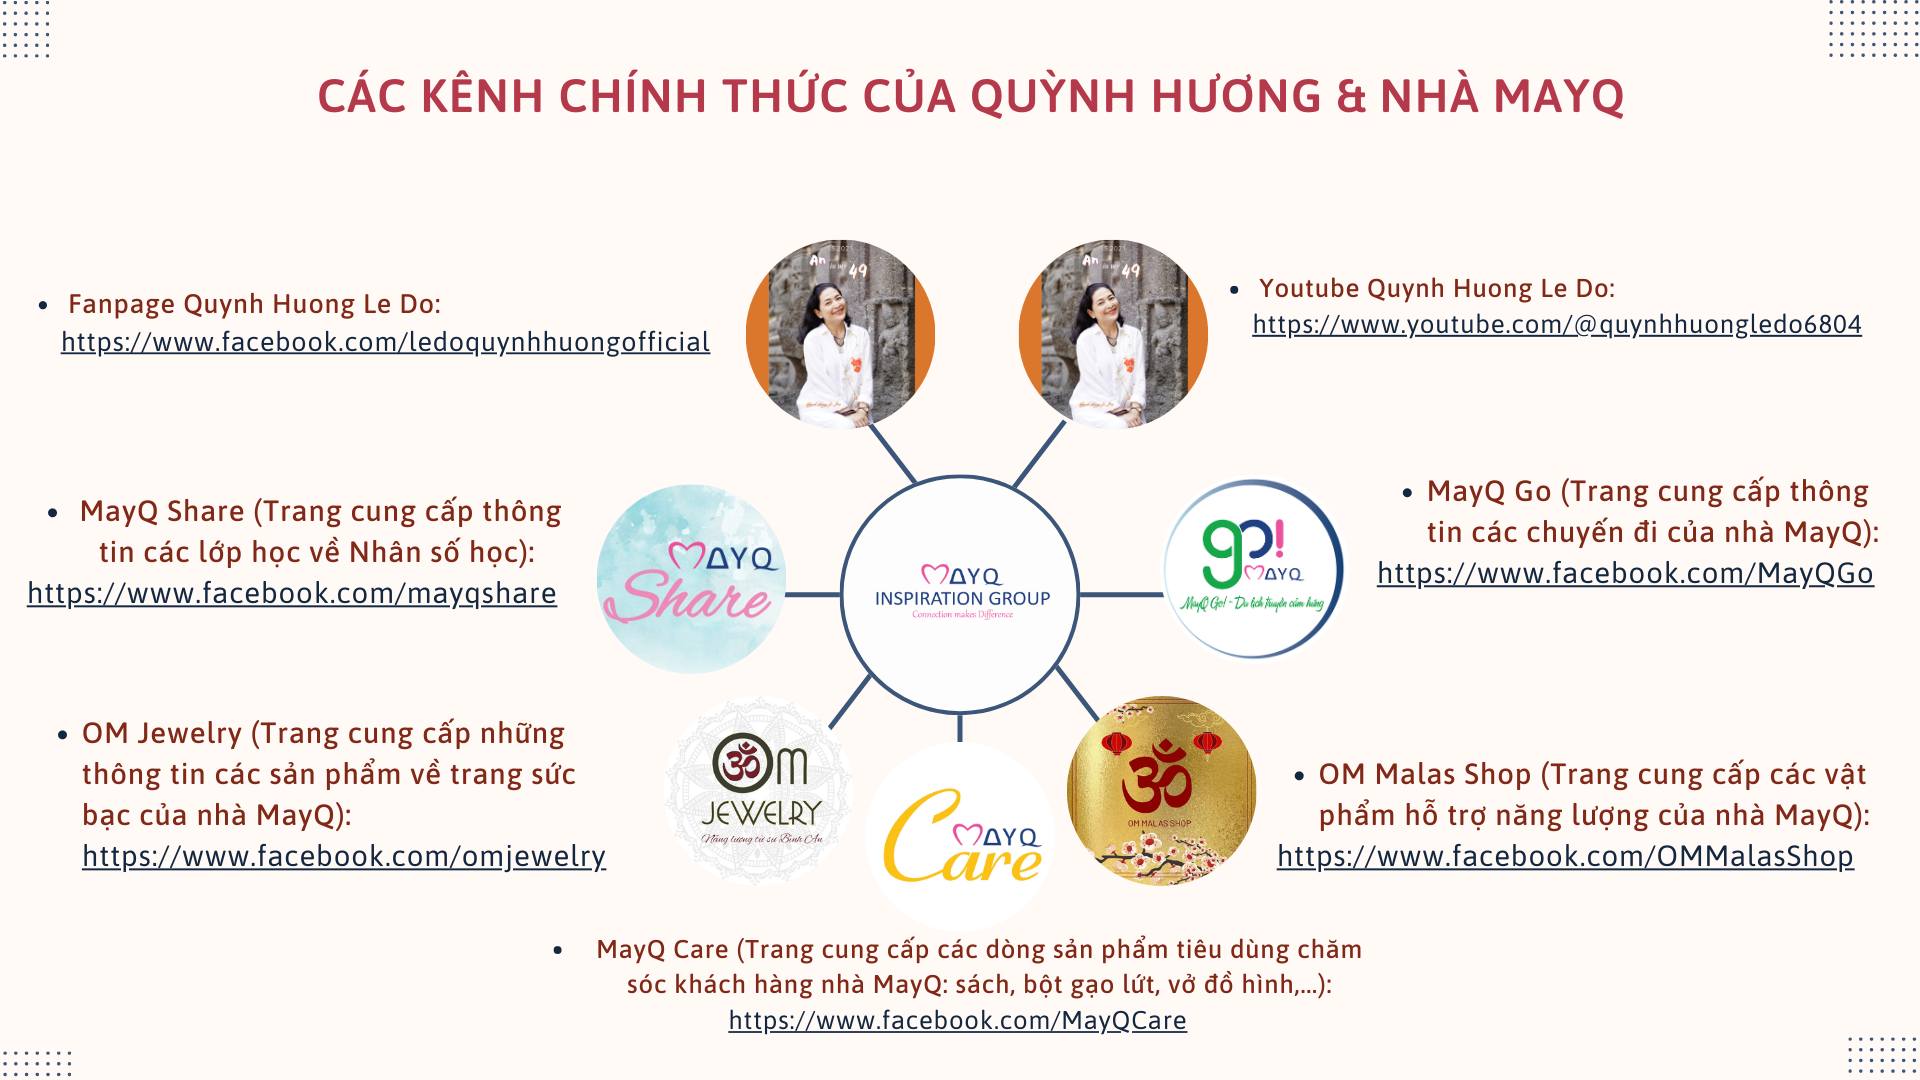 Với việc nội dung của Quỳnh Hương được đăng lại mà không có sự cho phép, chúng mình xin liệt kê các kênh chính thức của QH và nhà MayQ